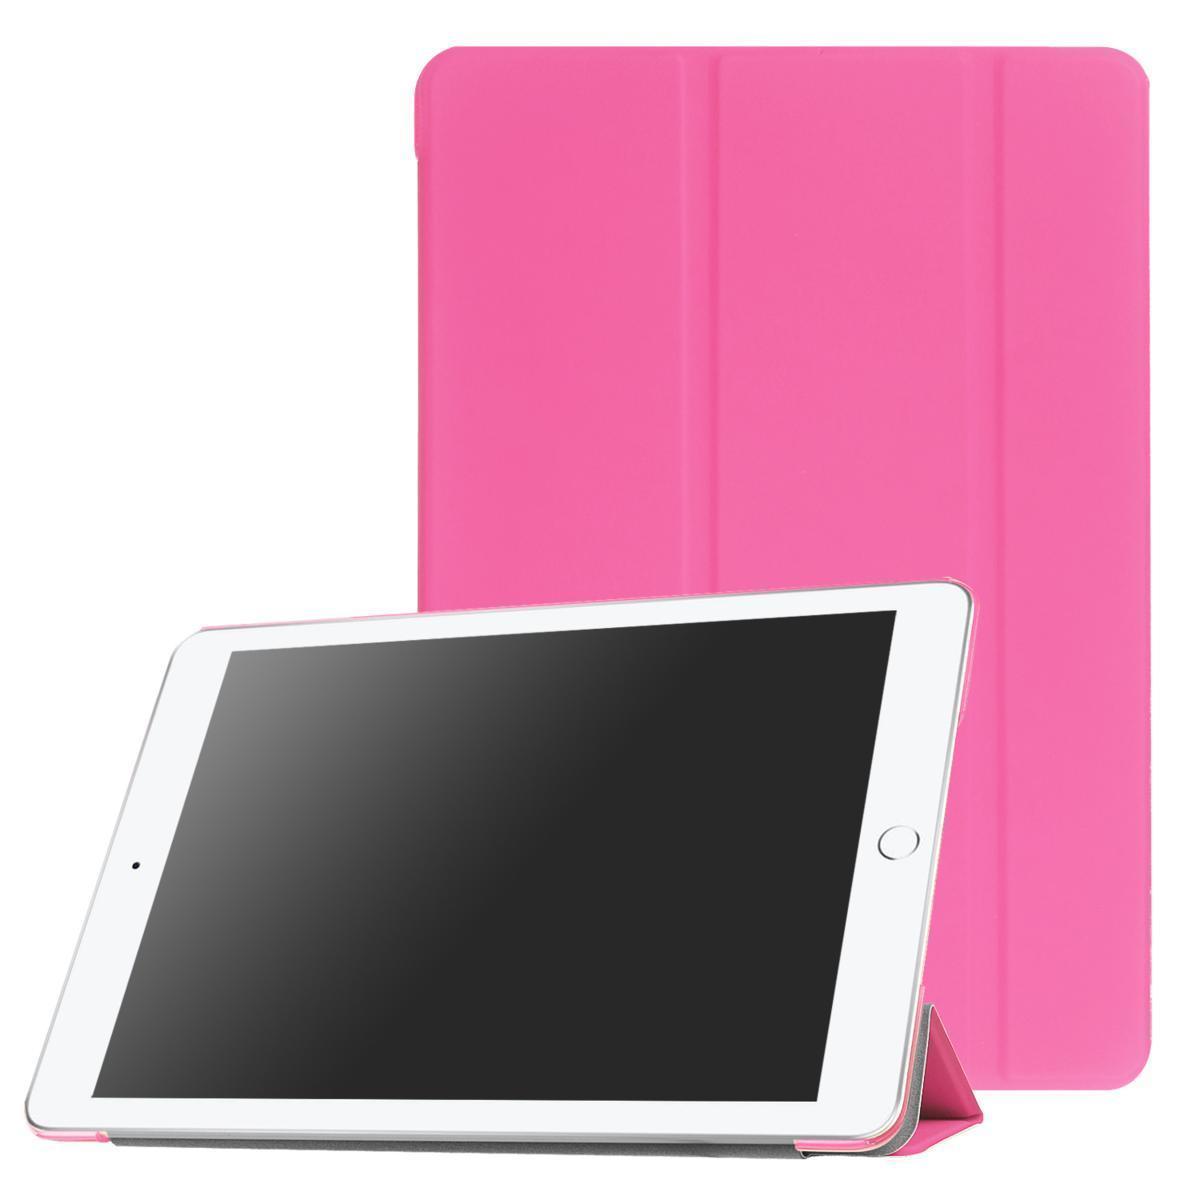 iPad ケース iPad5 / iPad6 / iPad Air1 / iPad Air2 兼用 三つ折スマートカバー PUレザー アイパッド カバー スタンド機能 ピンク_画像1